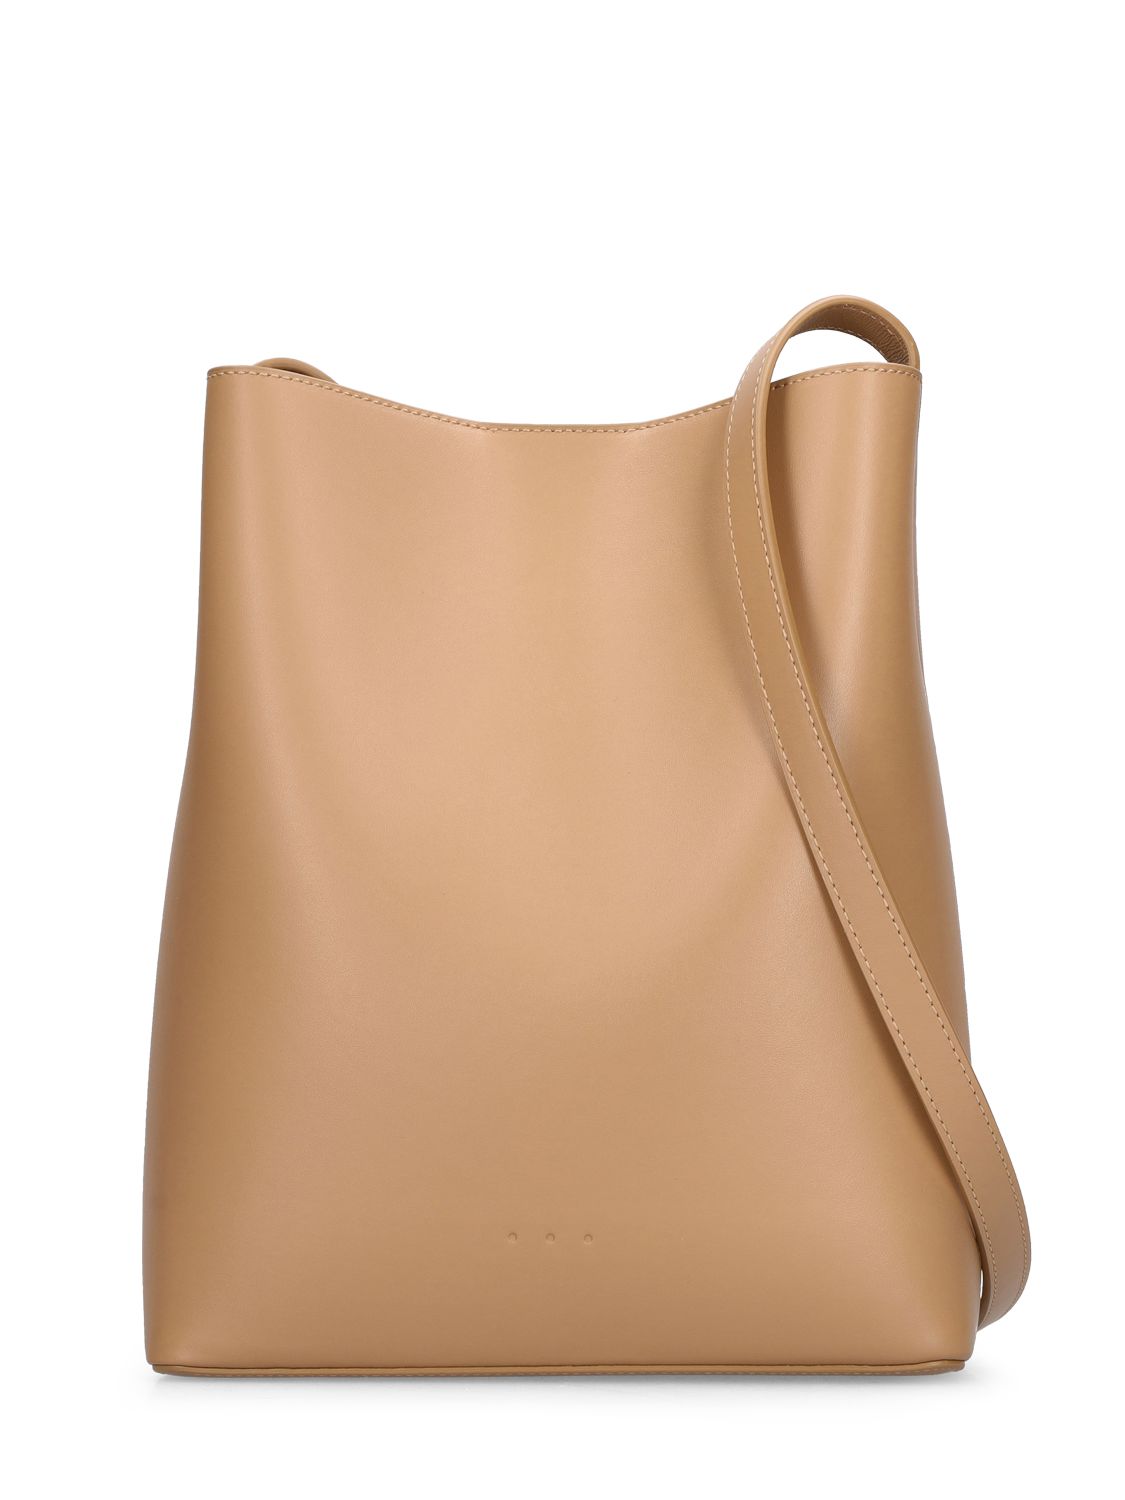 Sac Bucket Smooth Leather Shoulder Bag